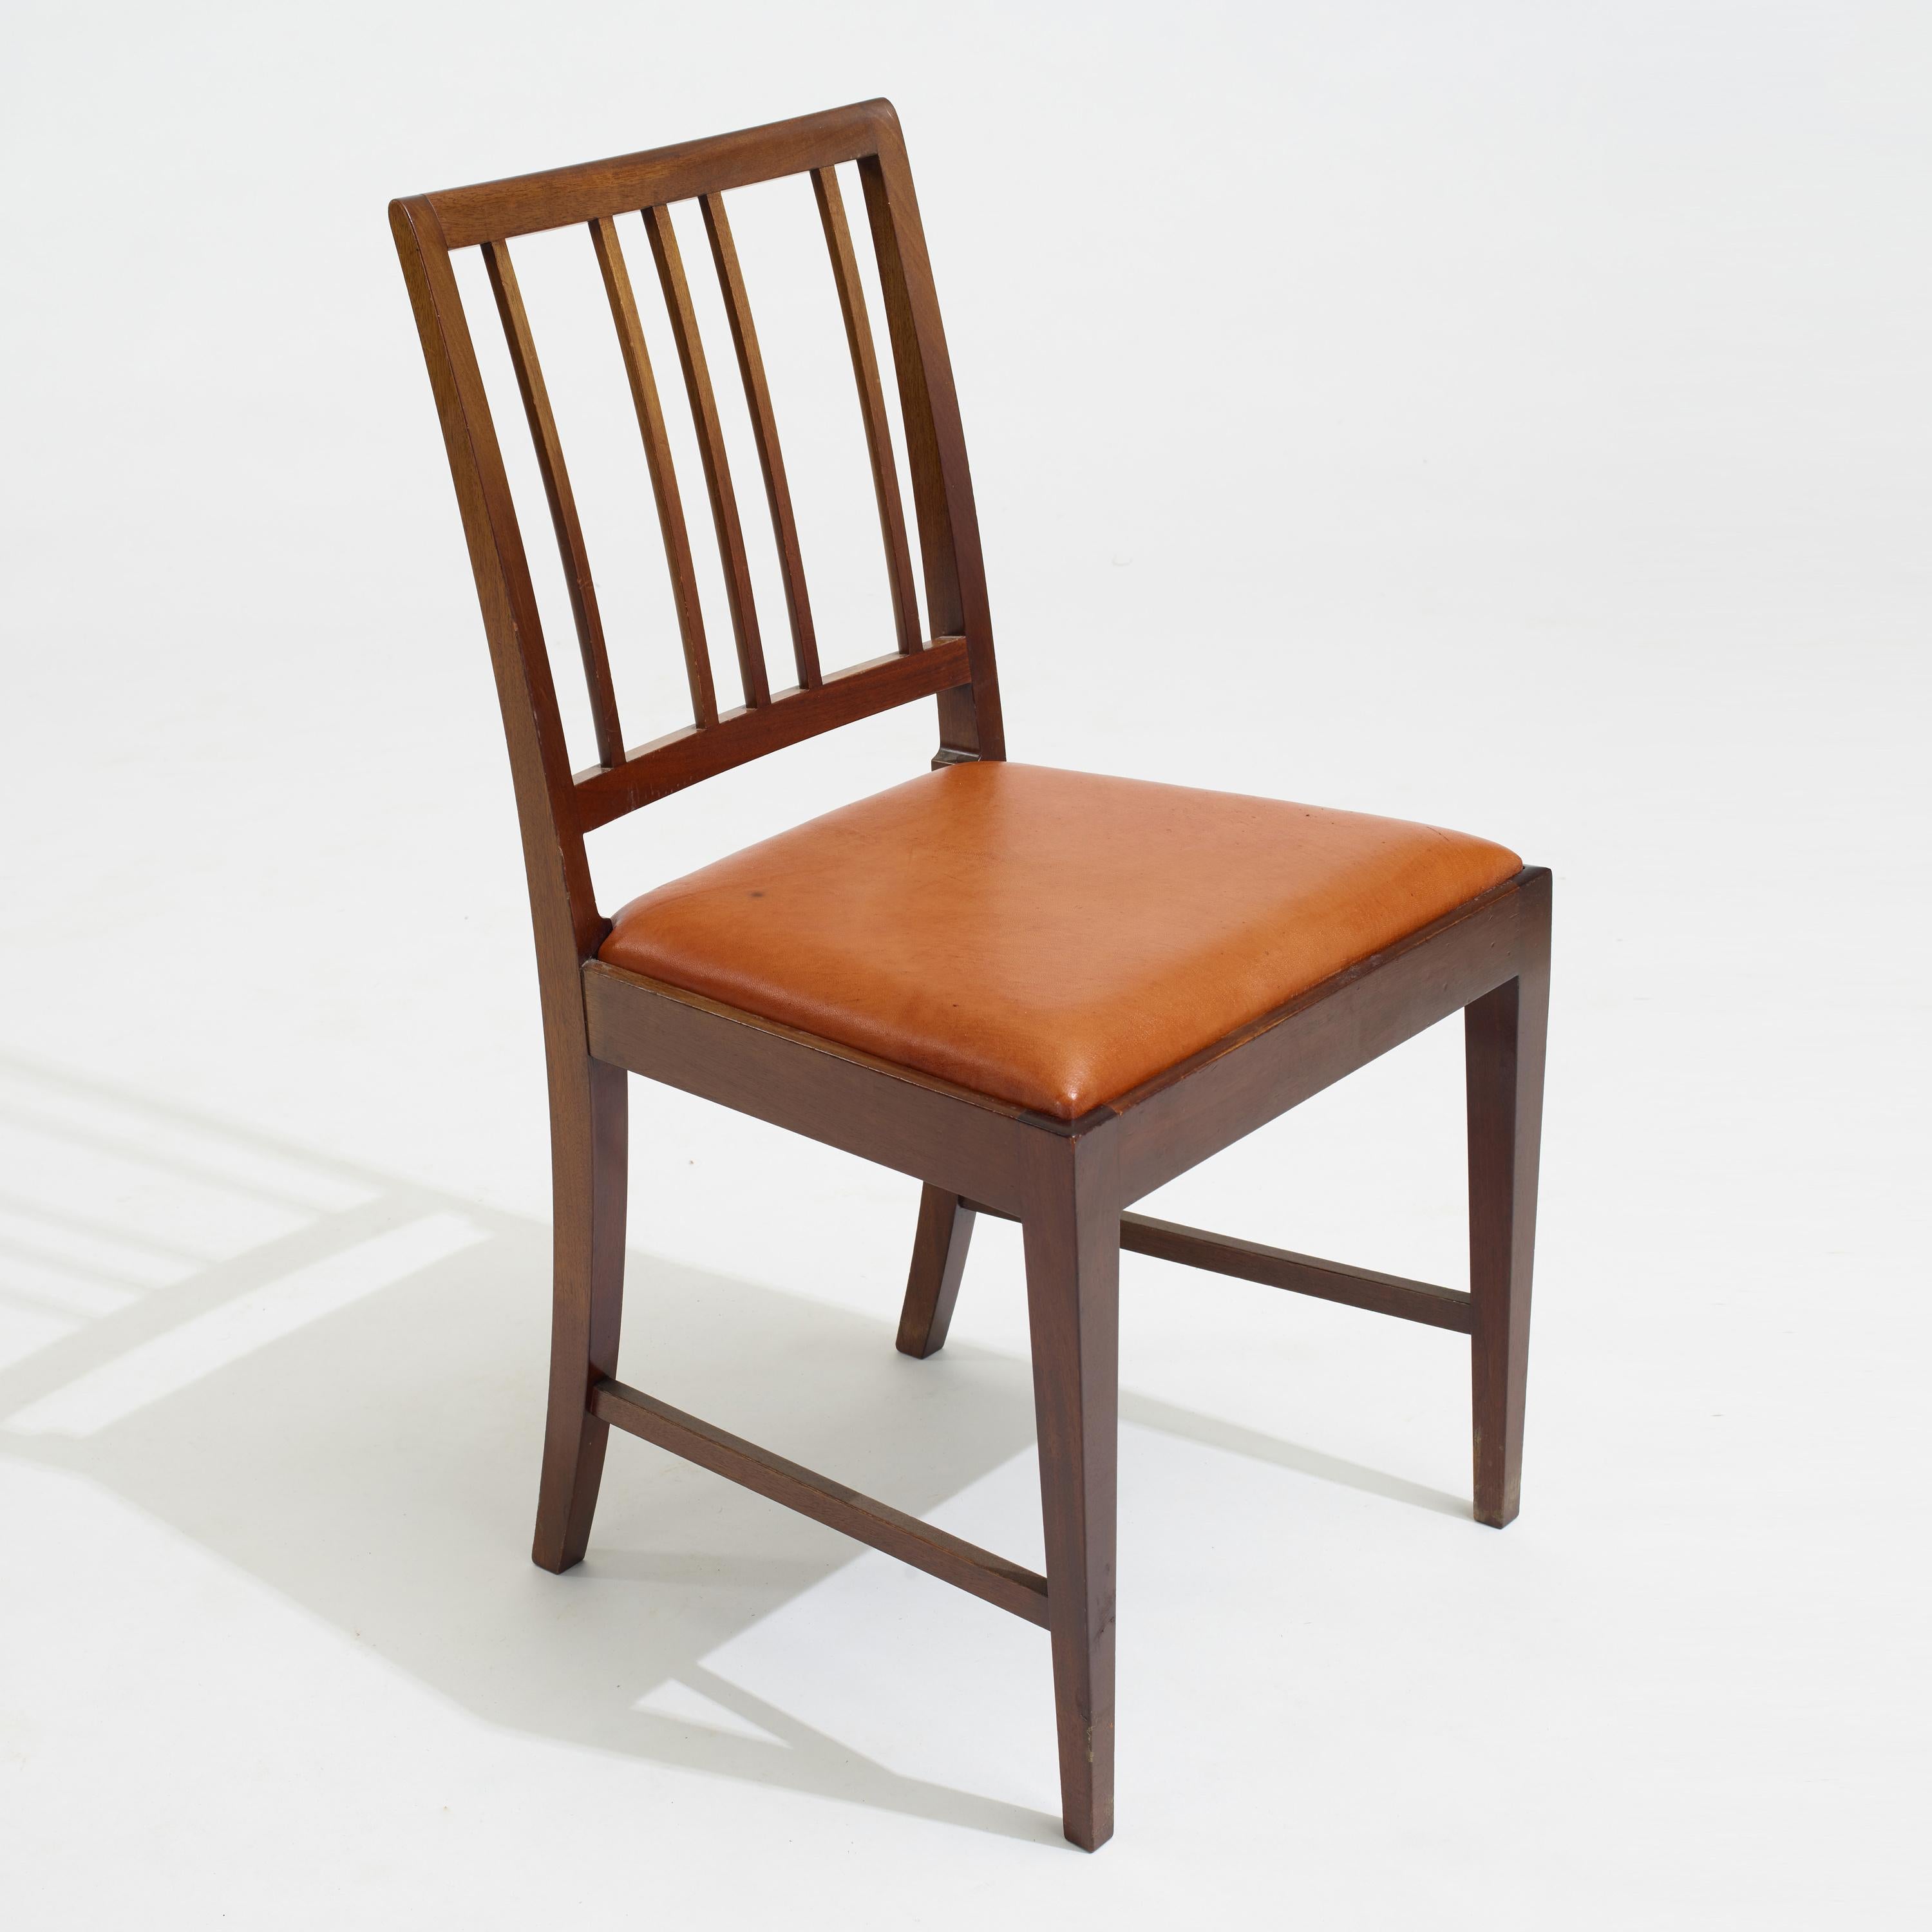 Chaises de salle à manger modernes danoises en acajou par Frits Henningsen, Danemark, vers les années 1930. Ils ont probablement été rénovés et retapissés à un moment ou à un autre. Magnifiques sièges en cuir couleur caramel. Nous avons également la